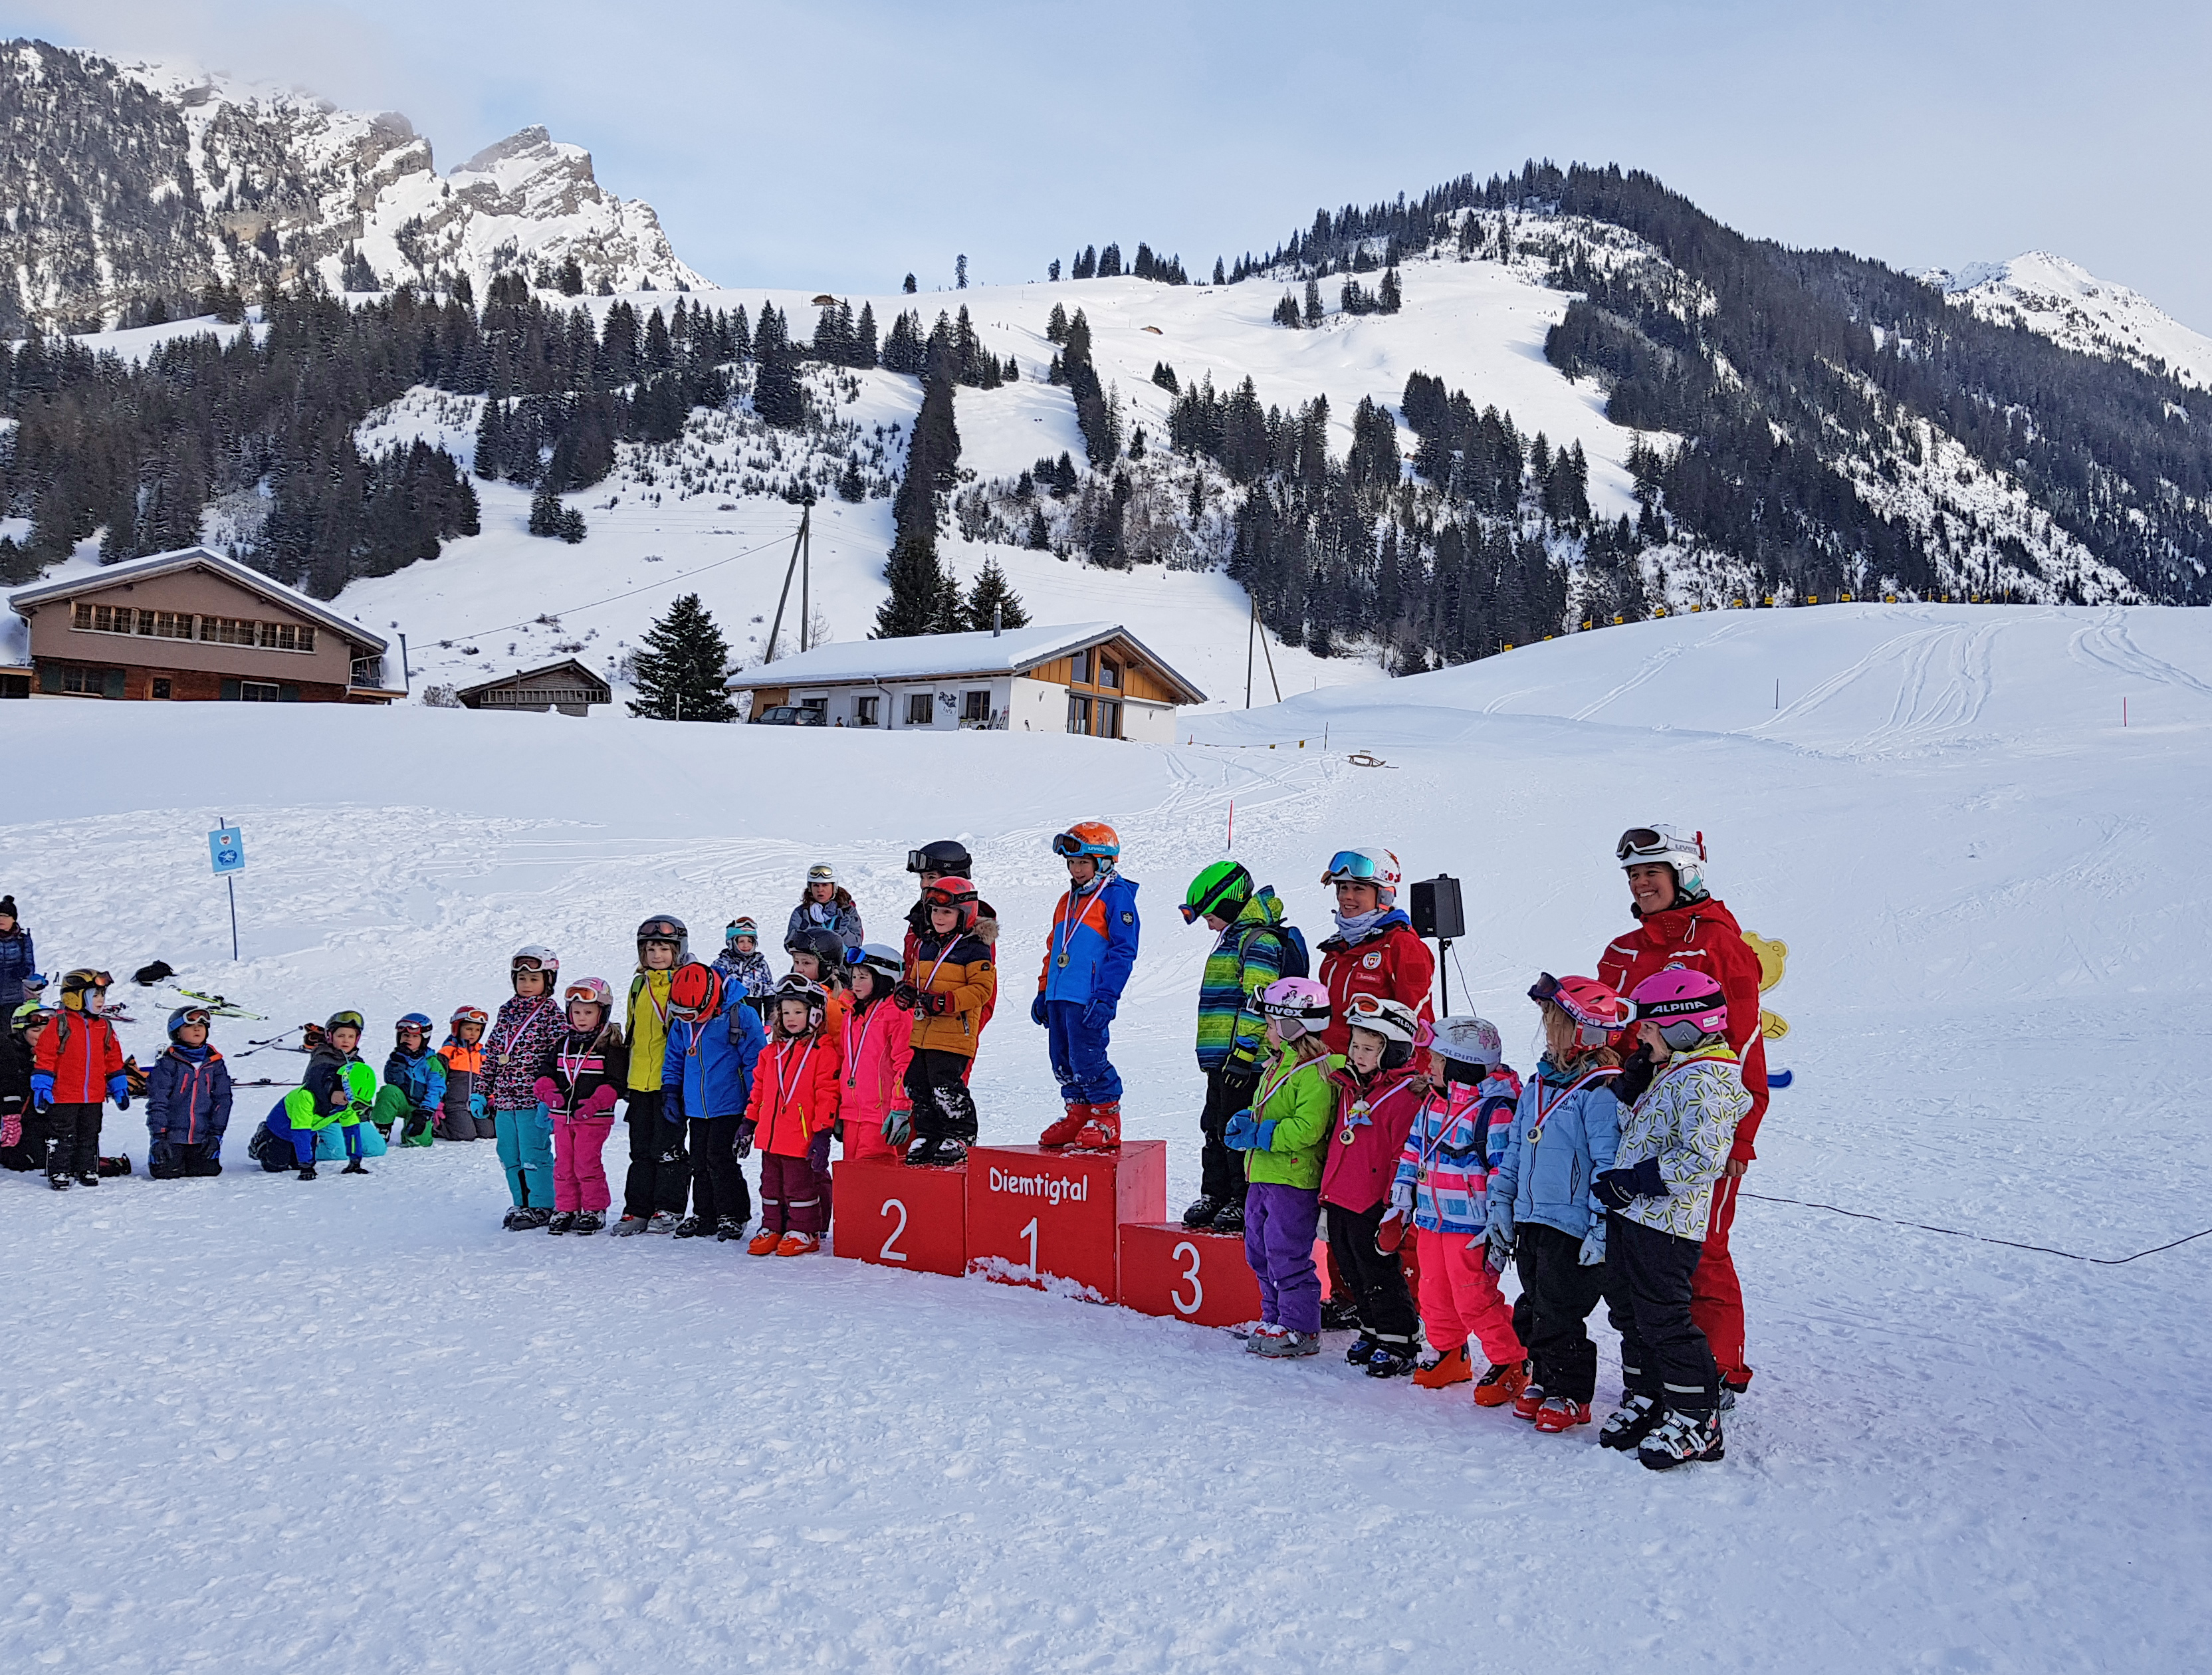 Stolze Kinder an der Rangverkündigung vom Skischulrennen